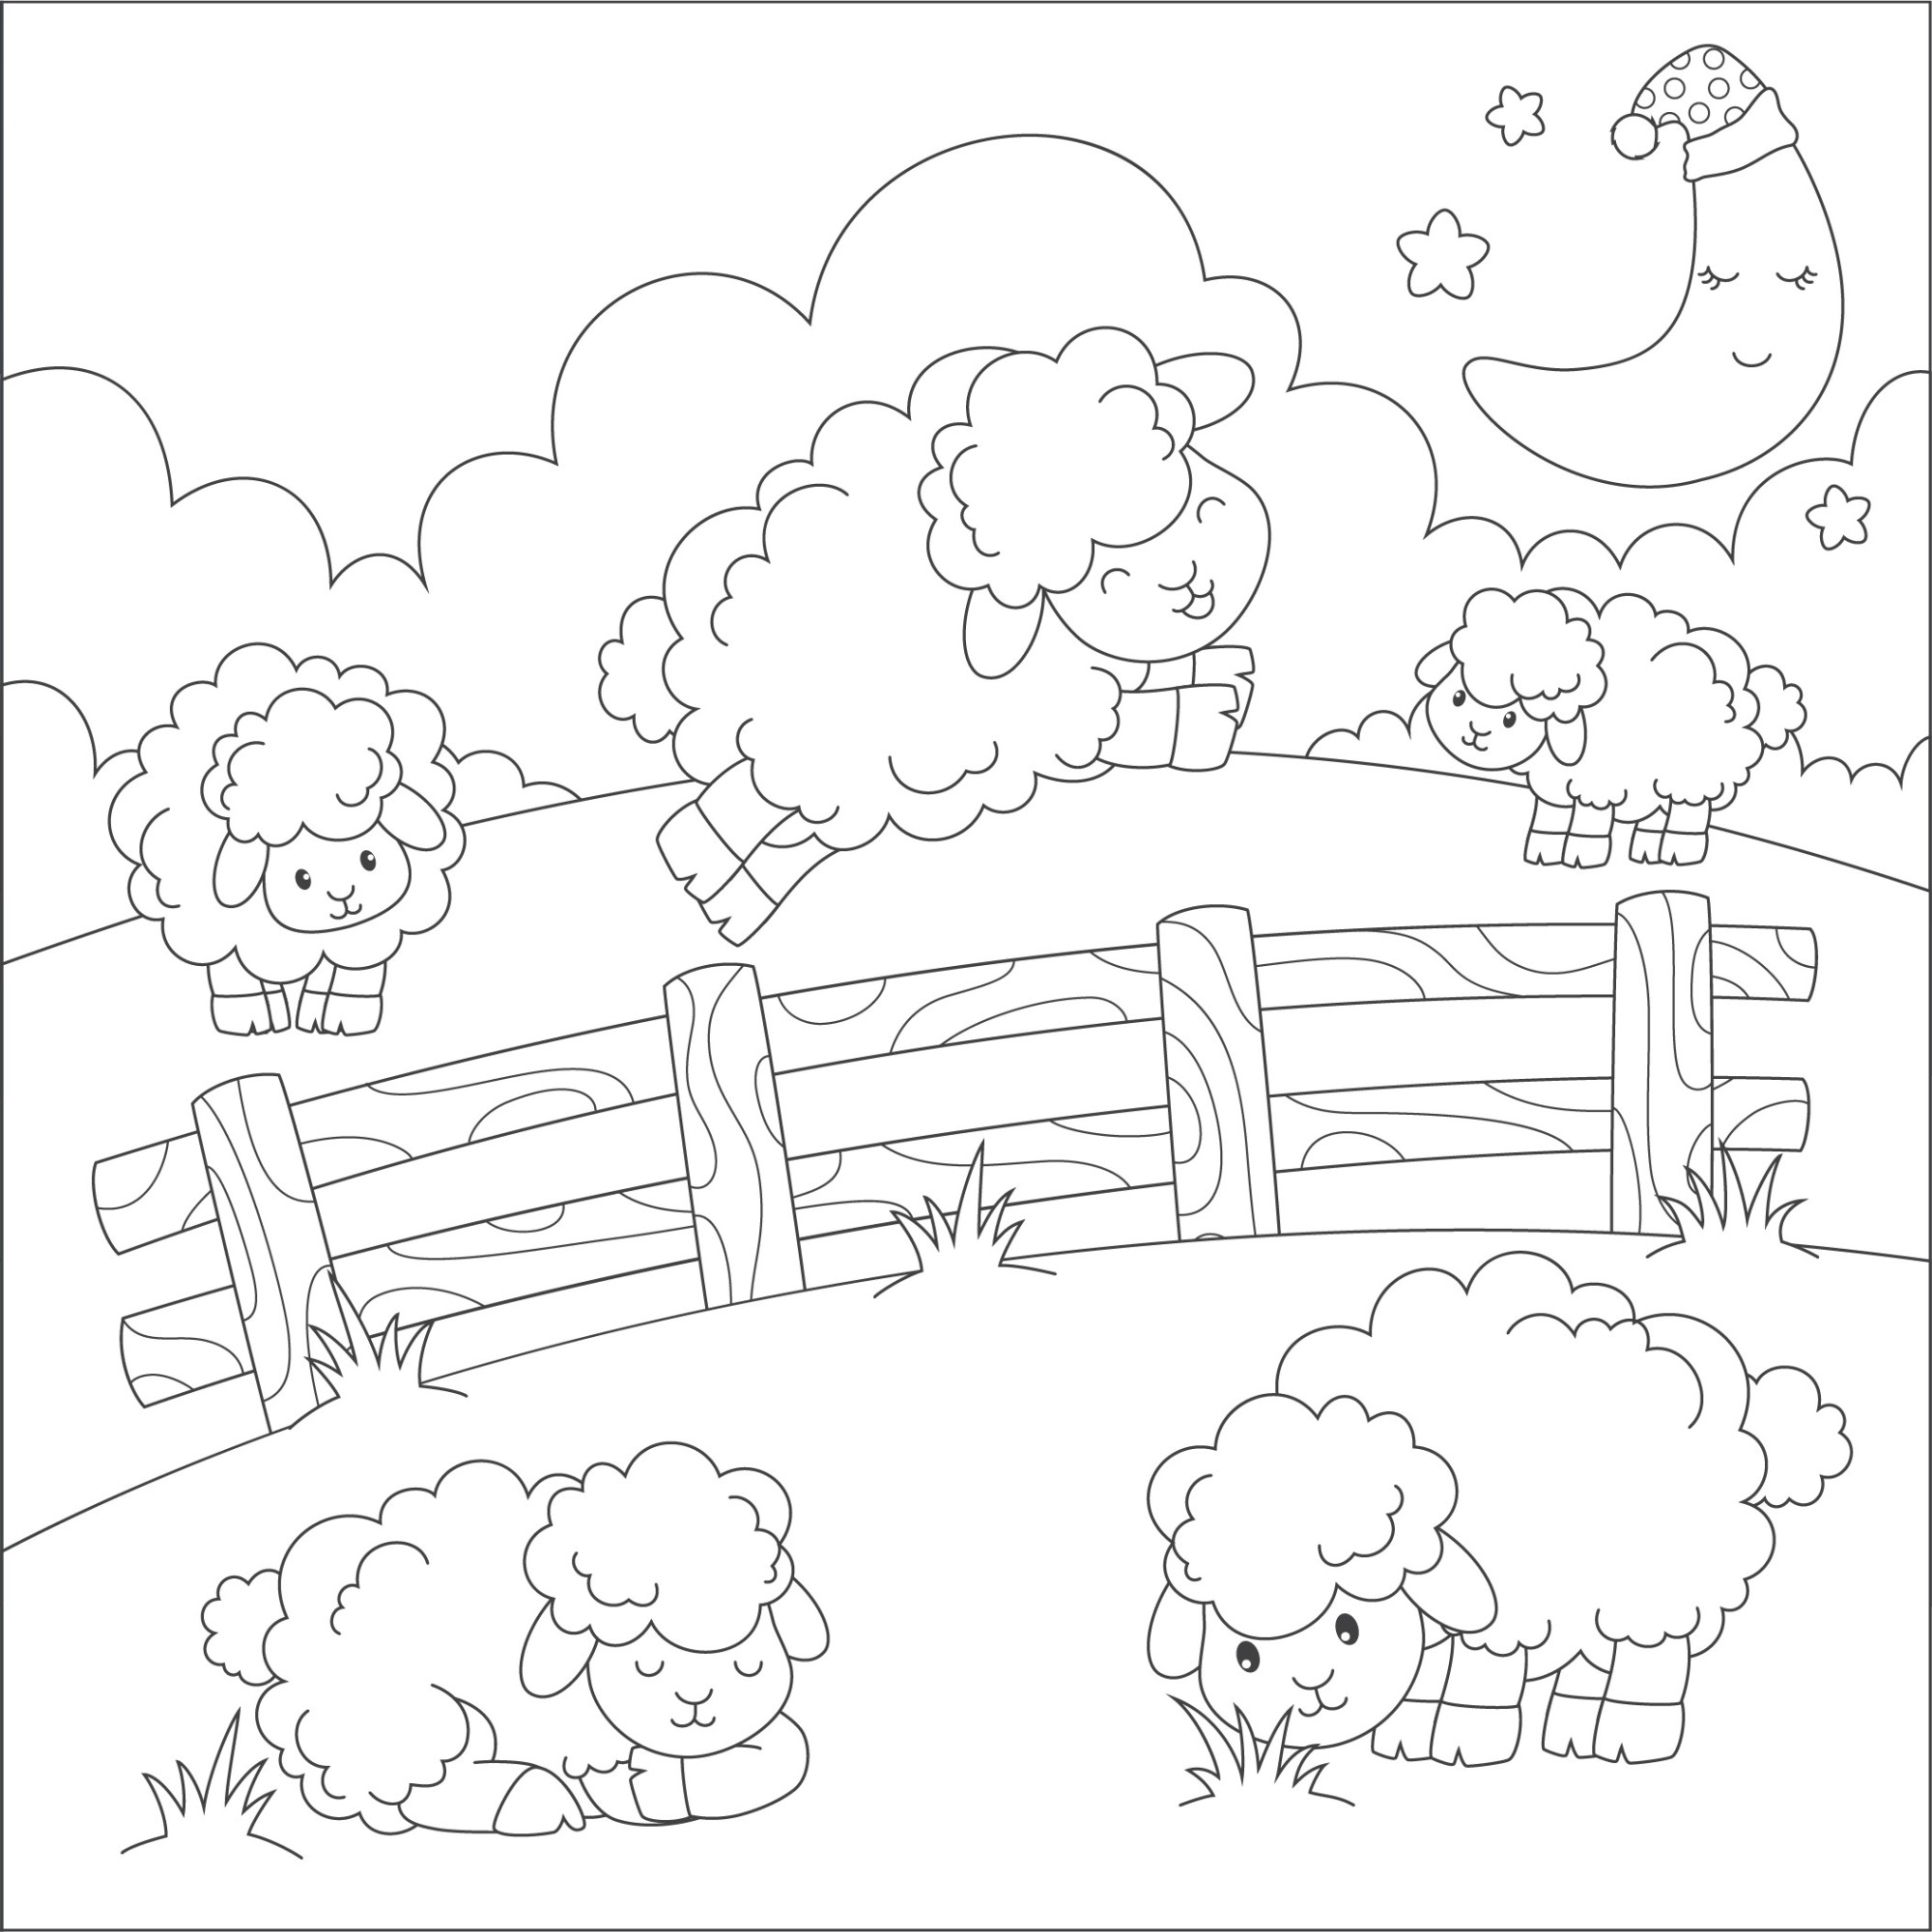 Раскраска для детей: овечки прыгают через забор на ферме